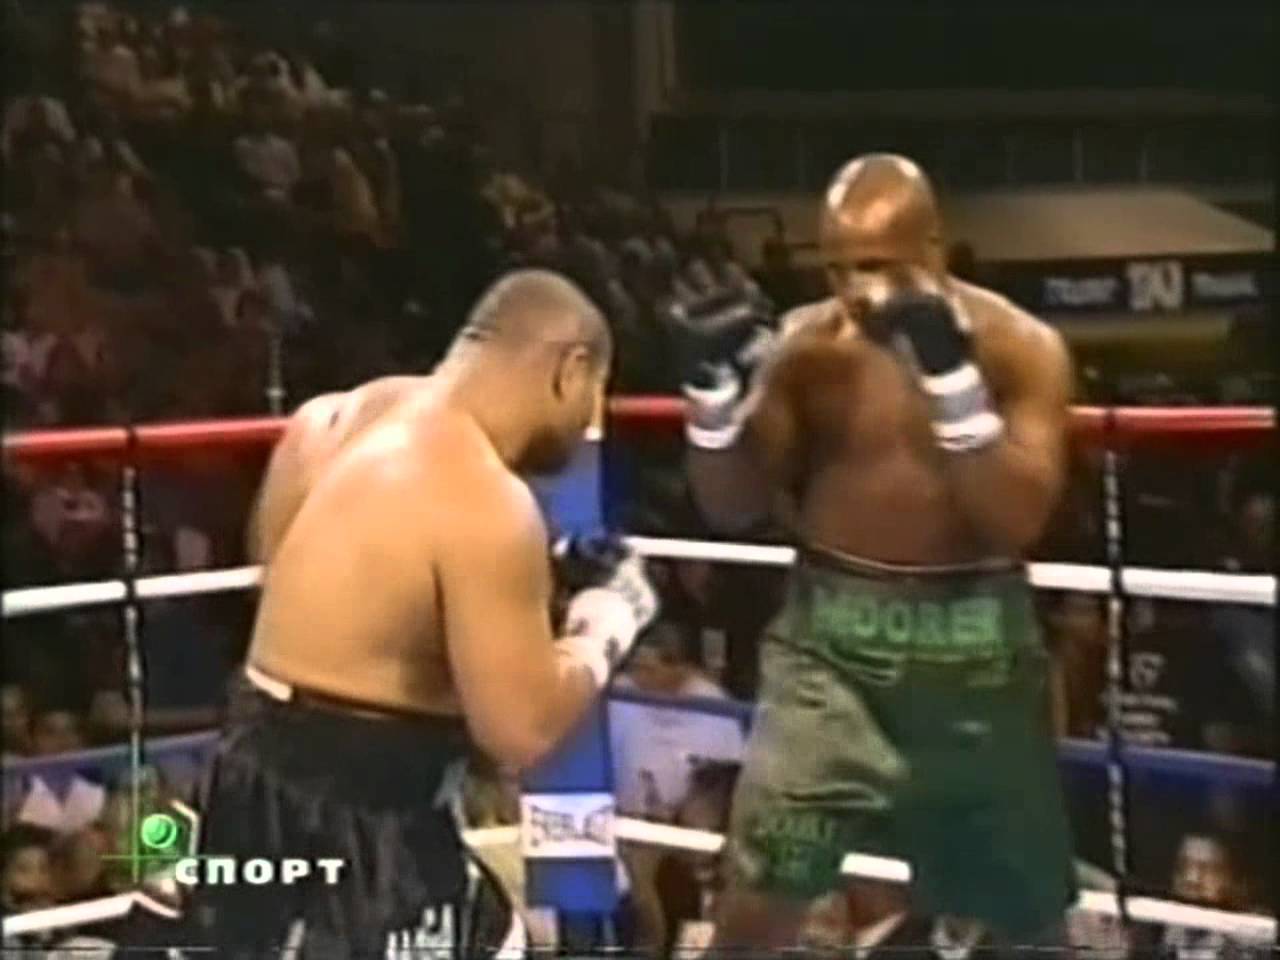 Boxing David Tua vs Michael Moorer 2002 17/08. http://boxrec.com/media/inde...